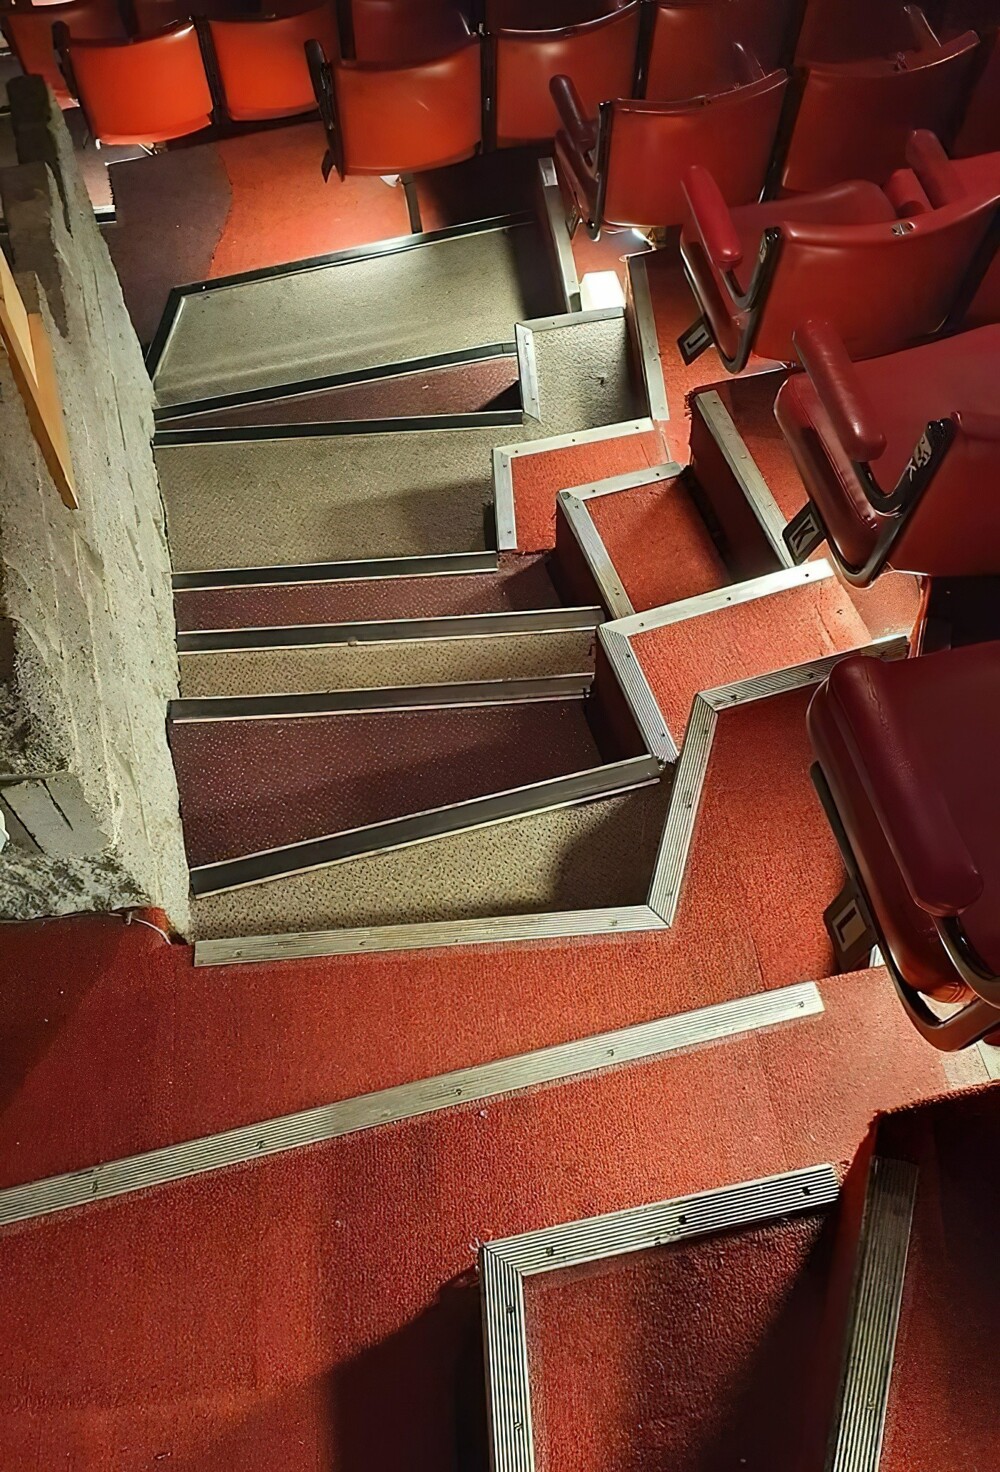 6. Лестница в кинотеатре или концертном зале. Можно лишь пожелать удачи тем, кто решит спуститься по ней в темноте